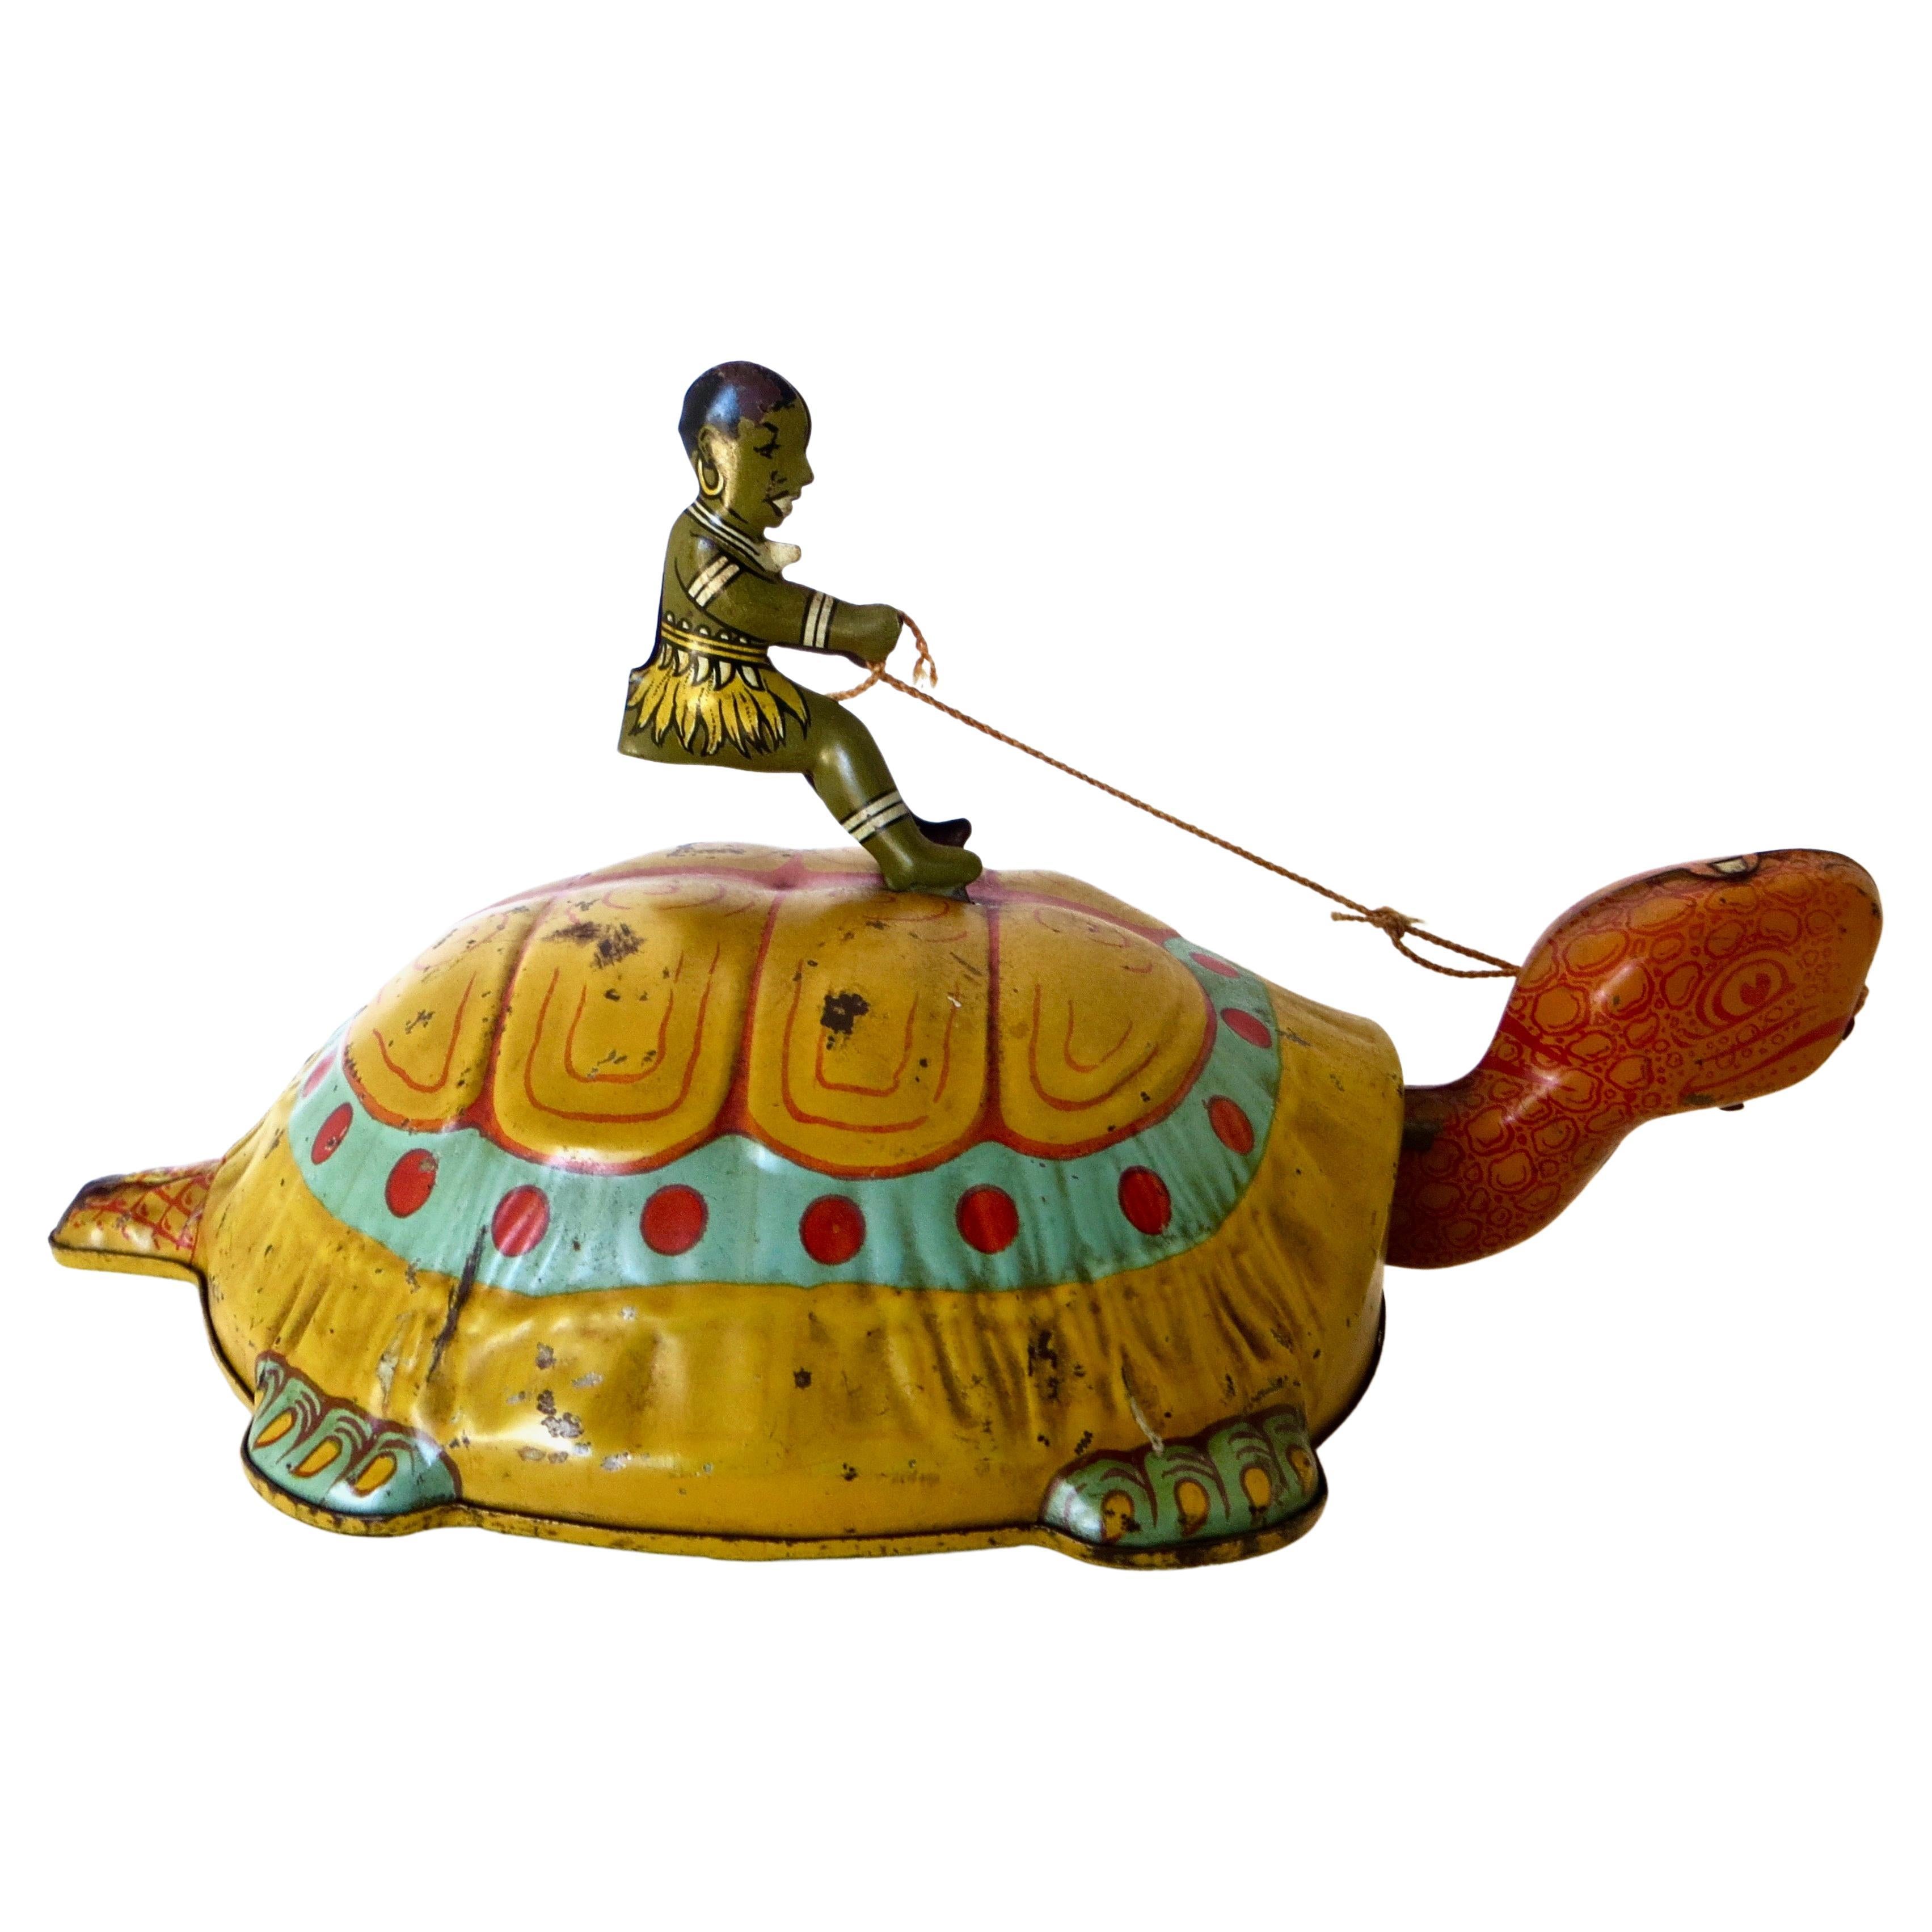 Jouet à remonter "Le garçon chevauchant une tortue" ; par J. Chein, vers les années 1930